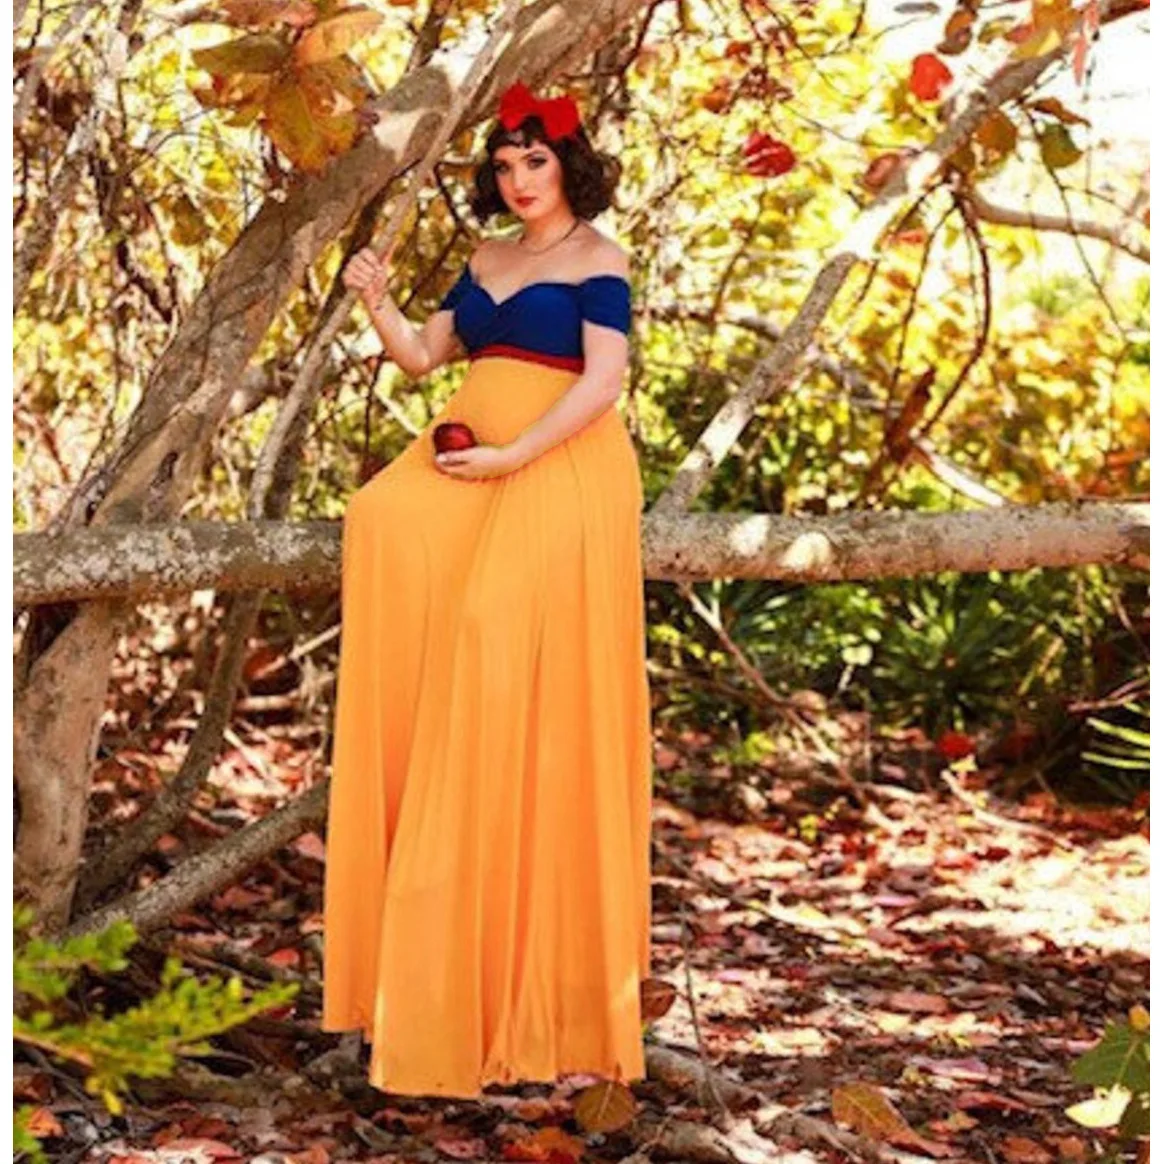 Принцесса косплей фотография для беременных реквизит длинное платье сине-желтое шифоновое платье для беременных фотосессия Макси платья от AliExpress RU&CIS NEW